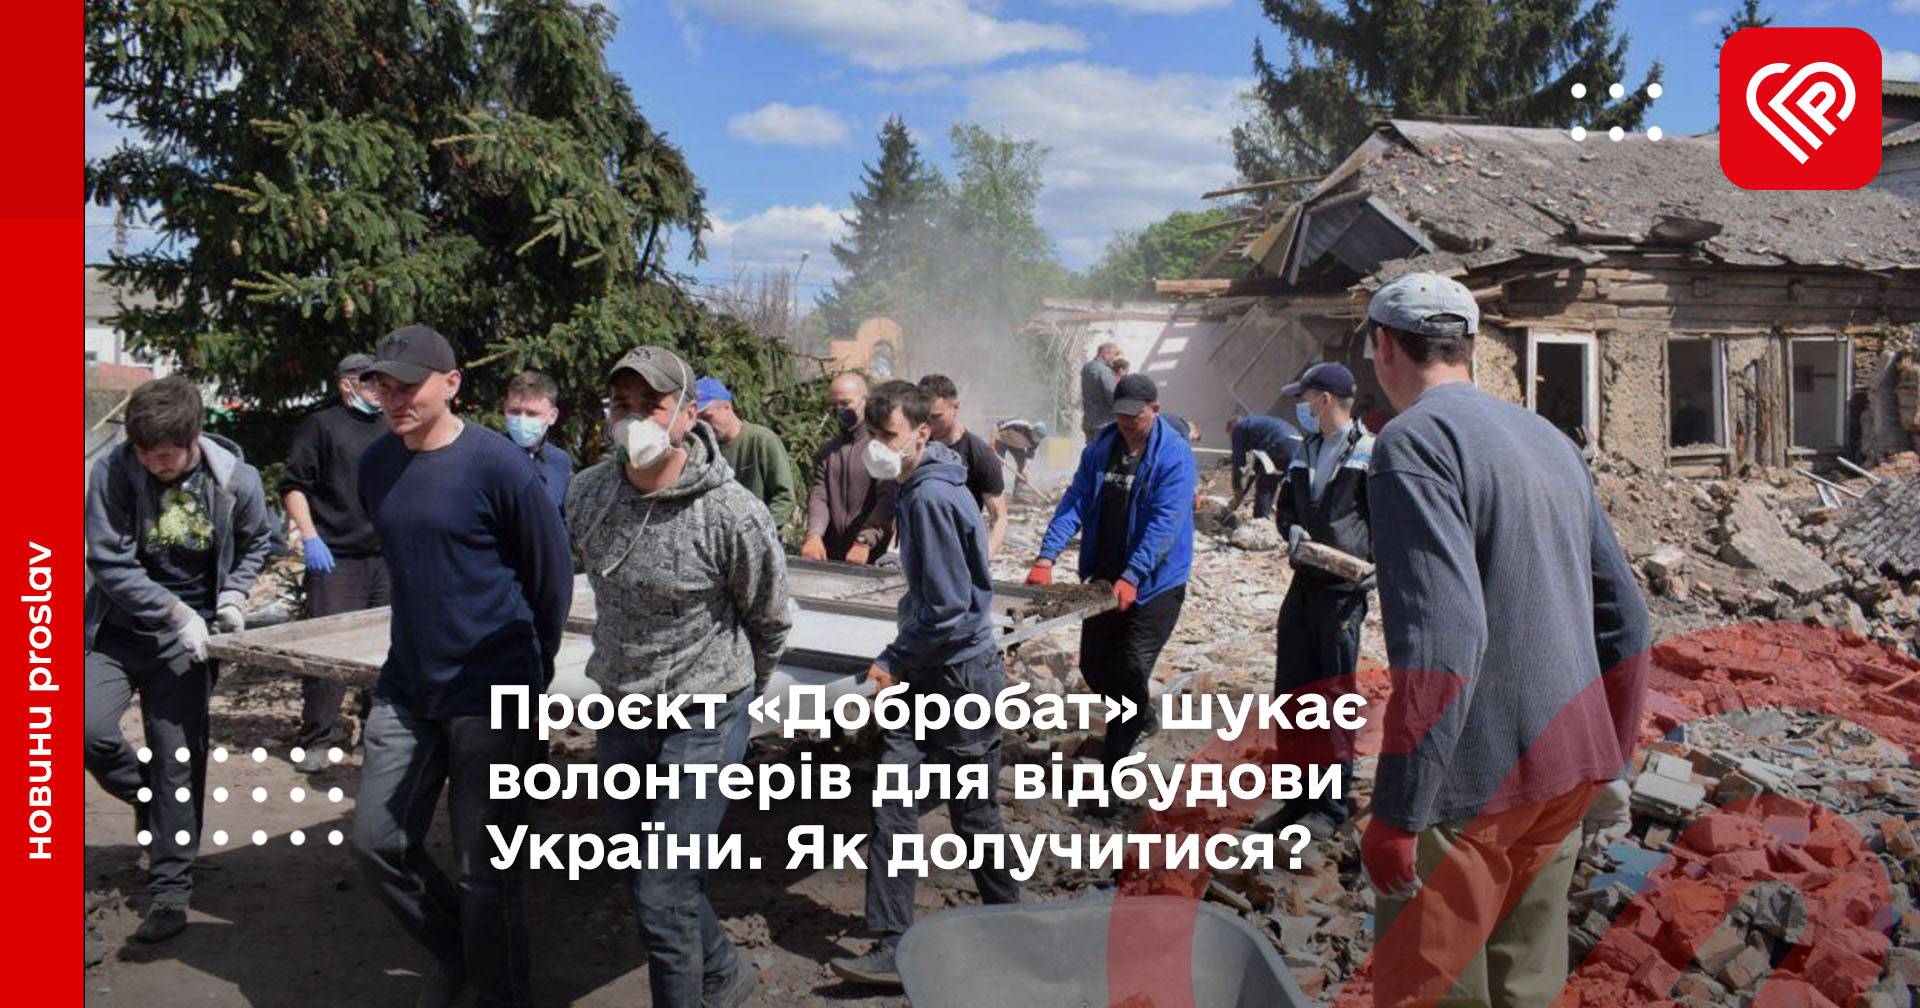 Проєкт «Добробат» шукає волонтерів для відбудови України. Як долучитися?